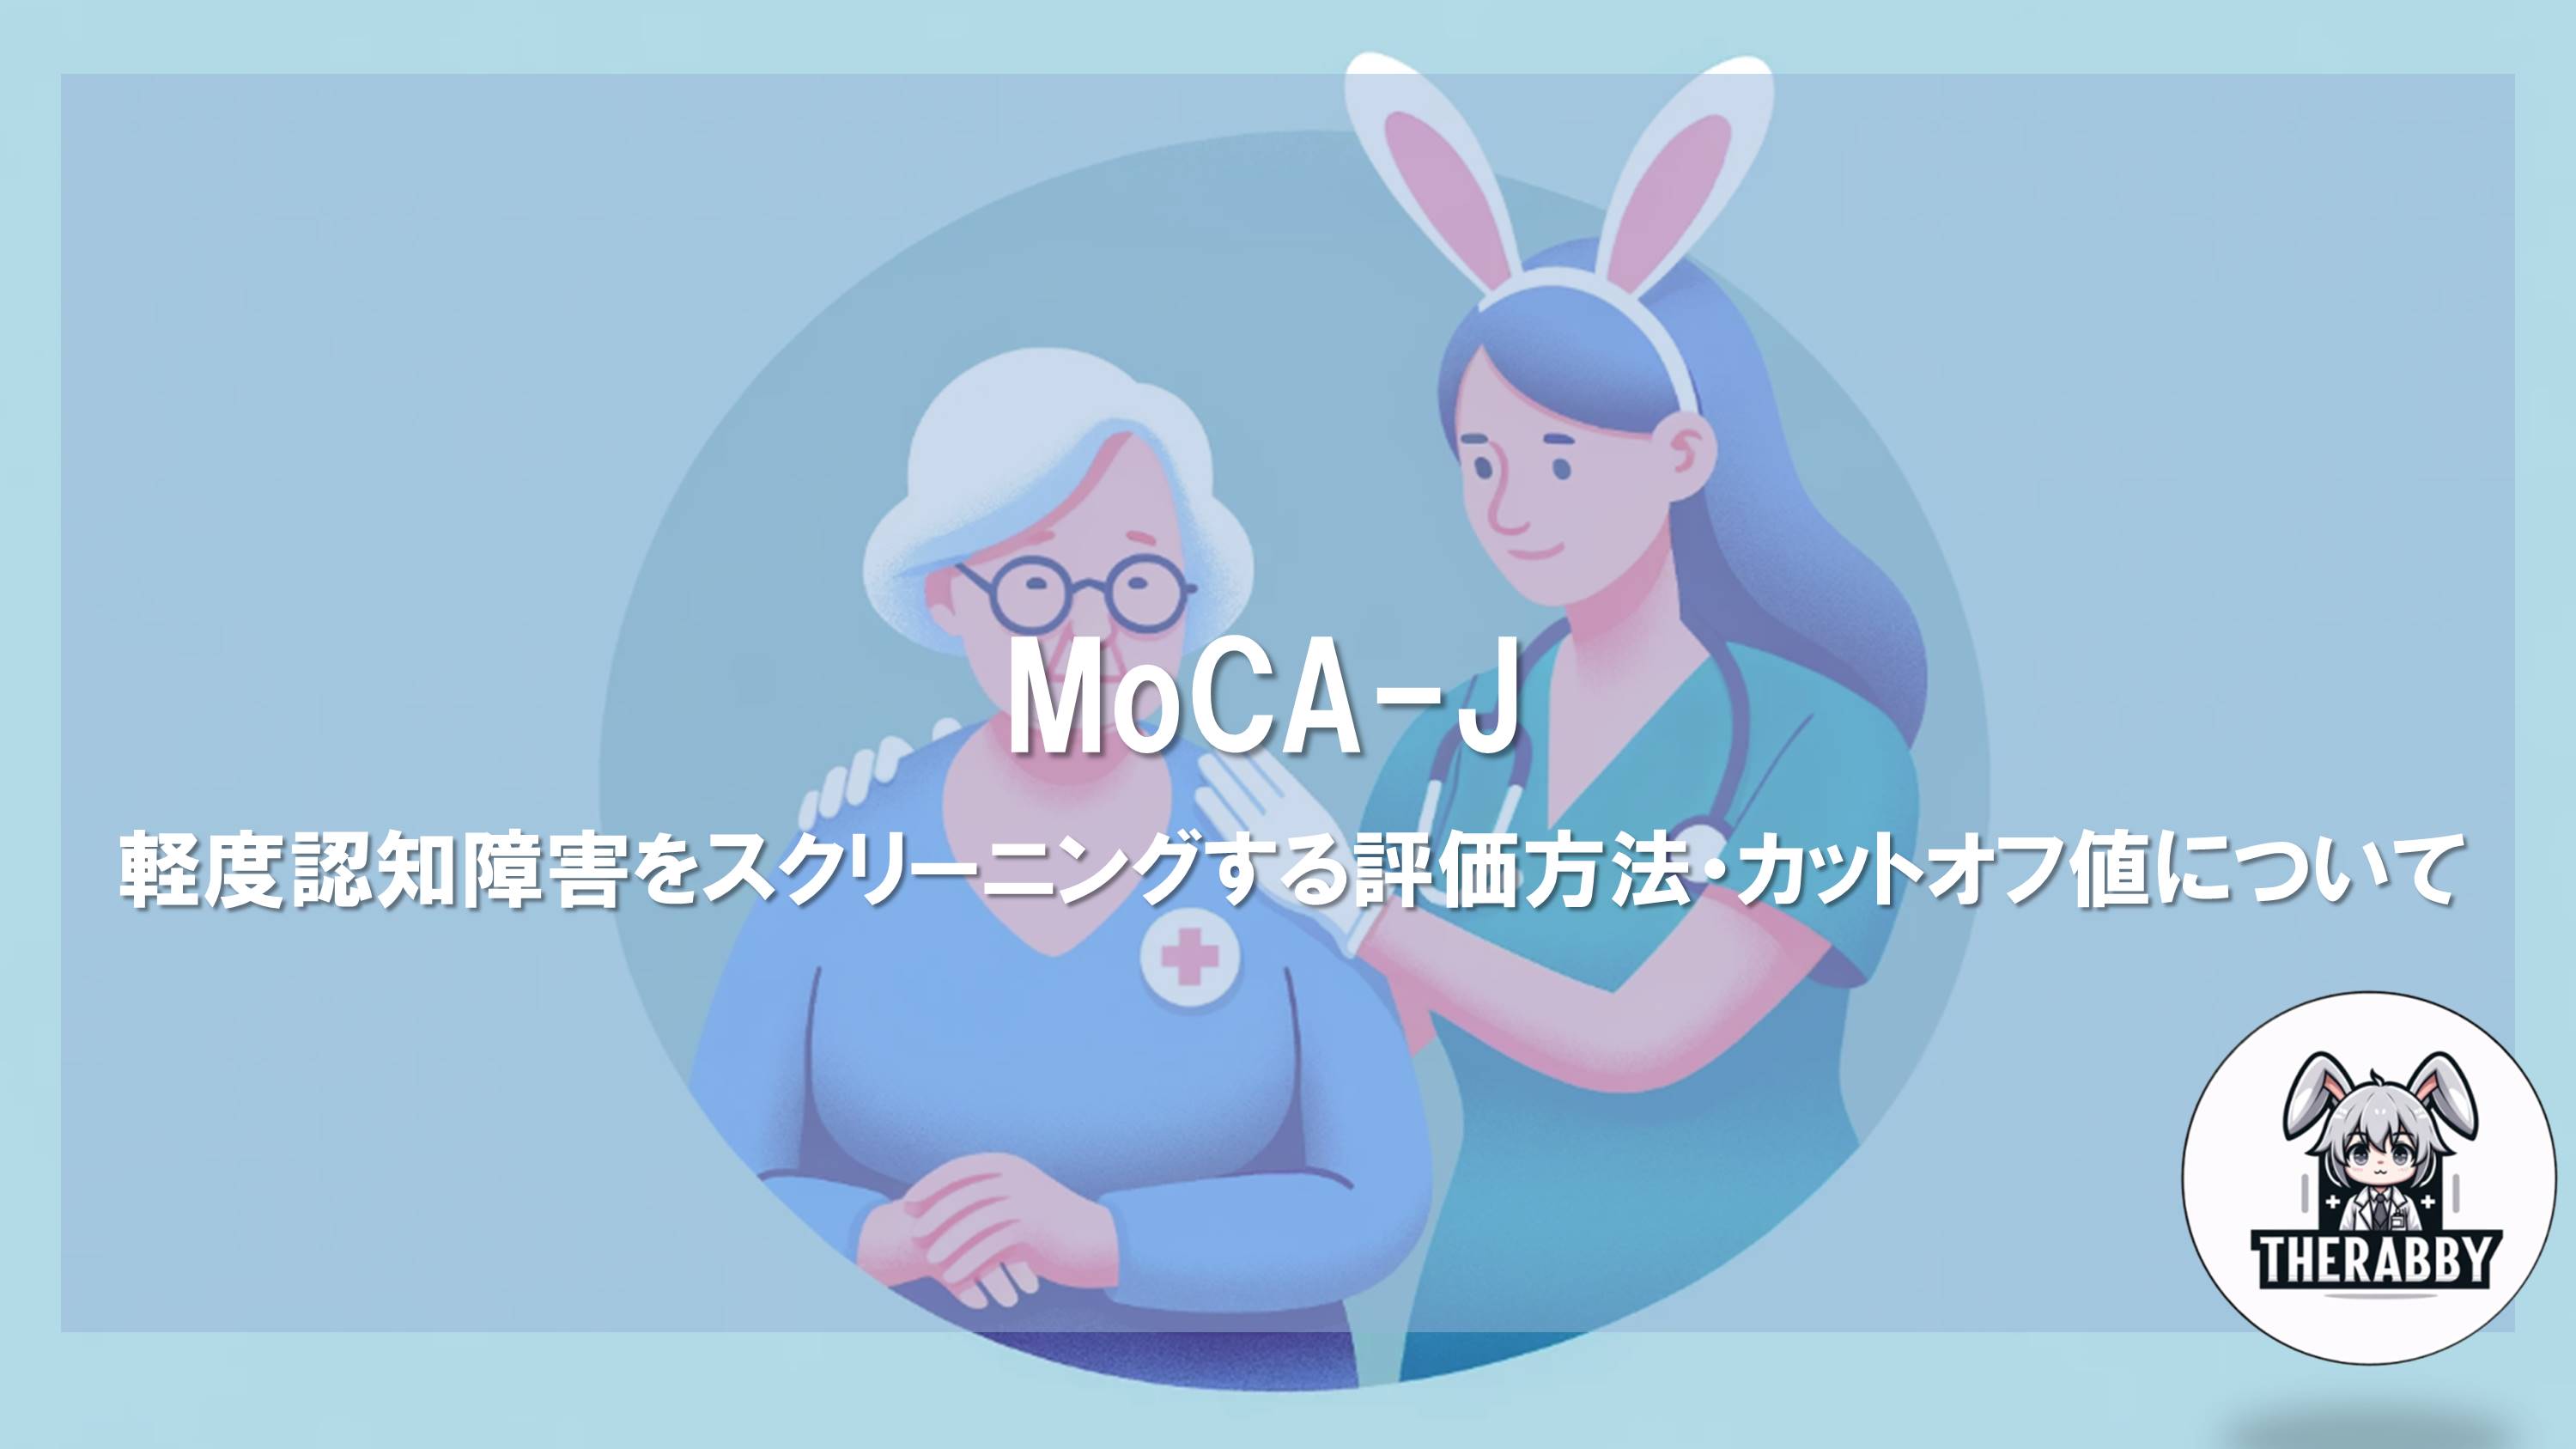 MoCA-J - 軽度認知障害をスクリーニングする評価方法・カットオフ値について